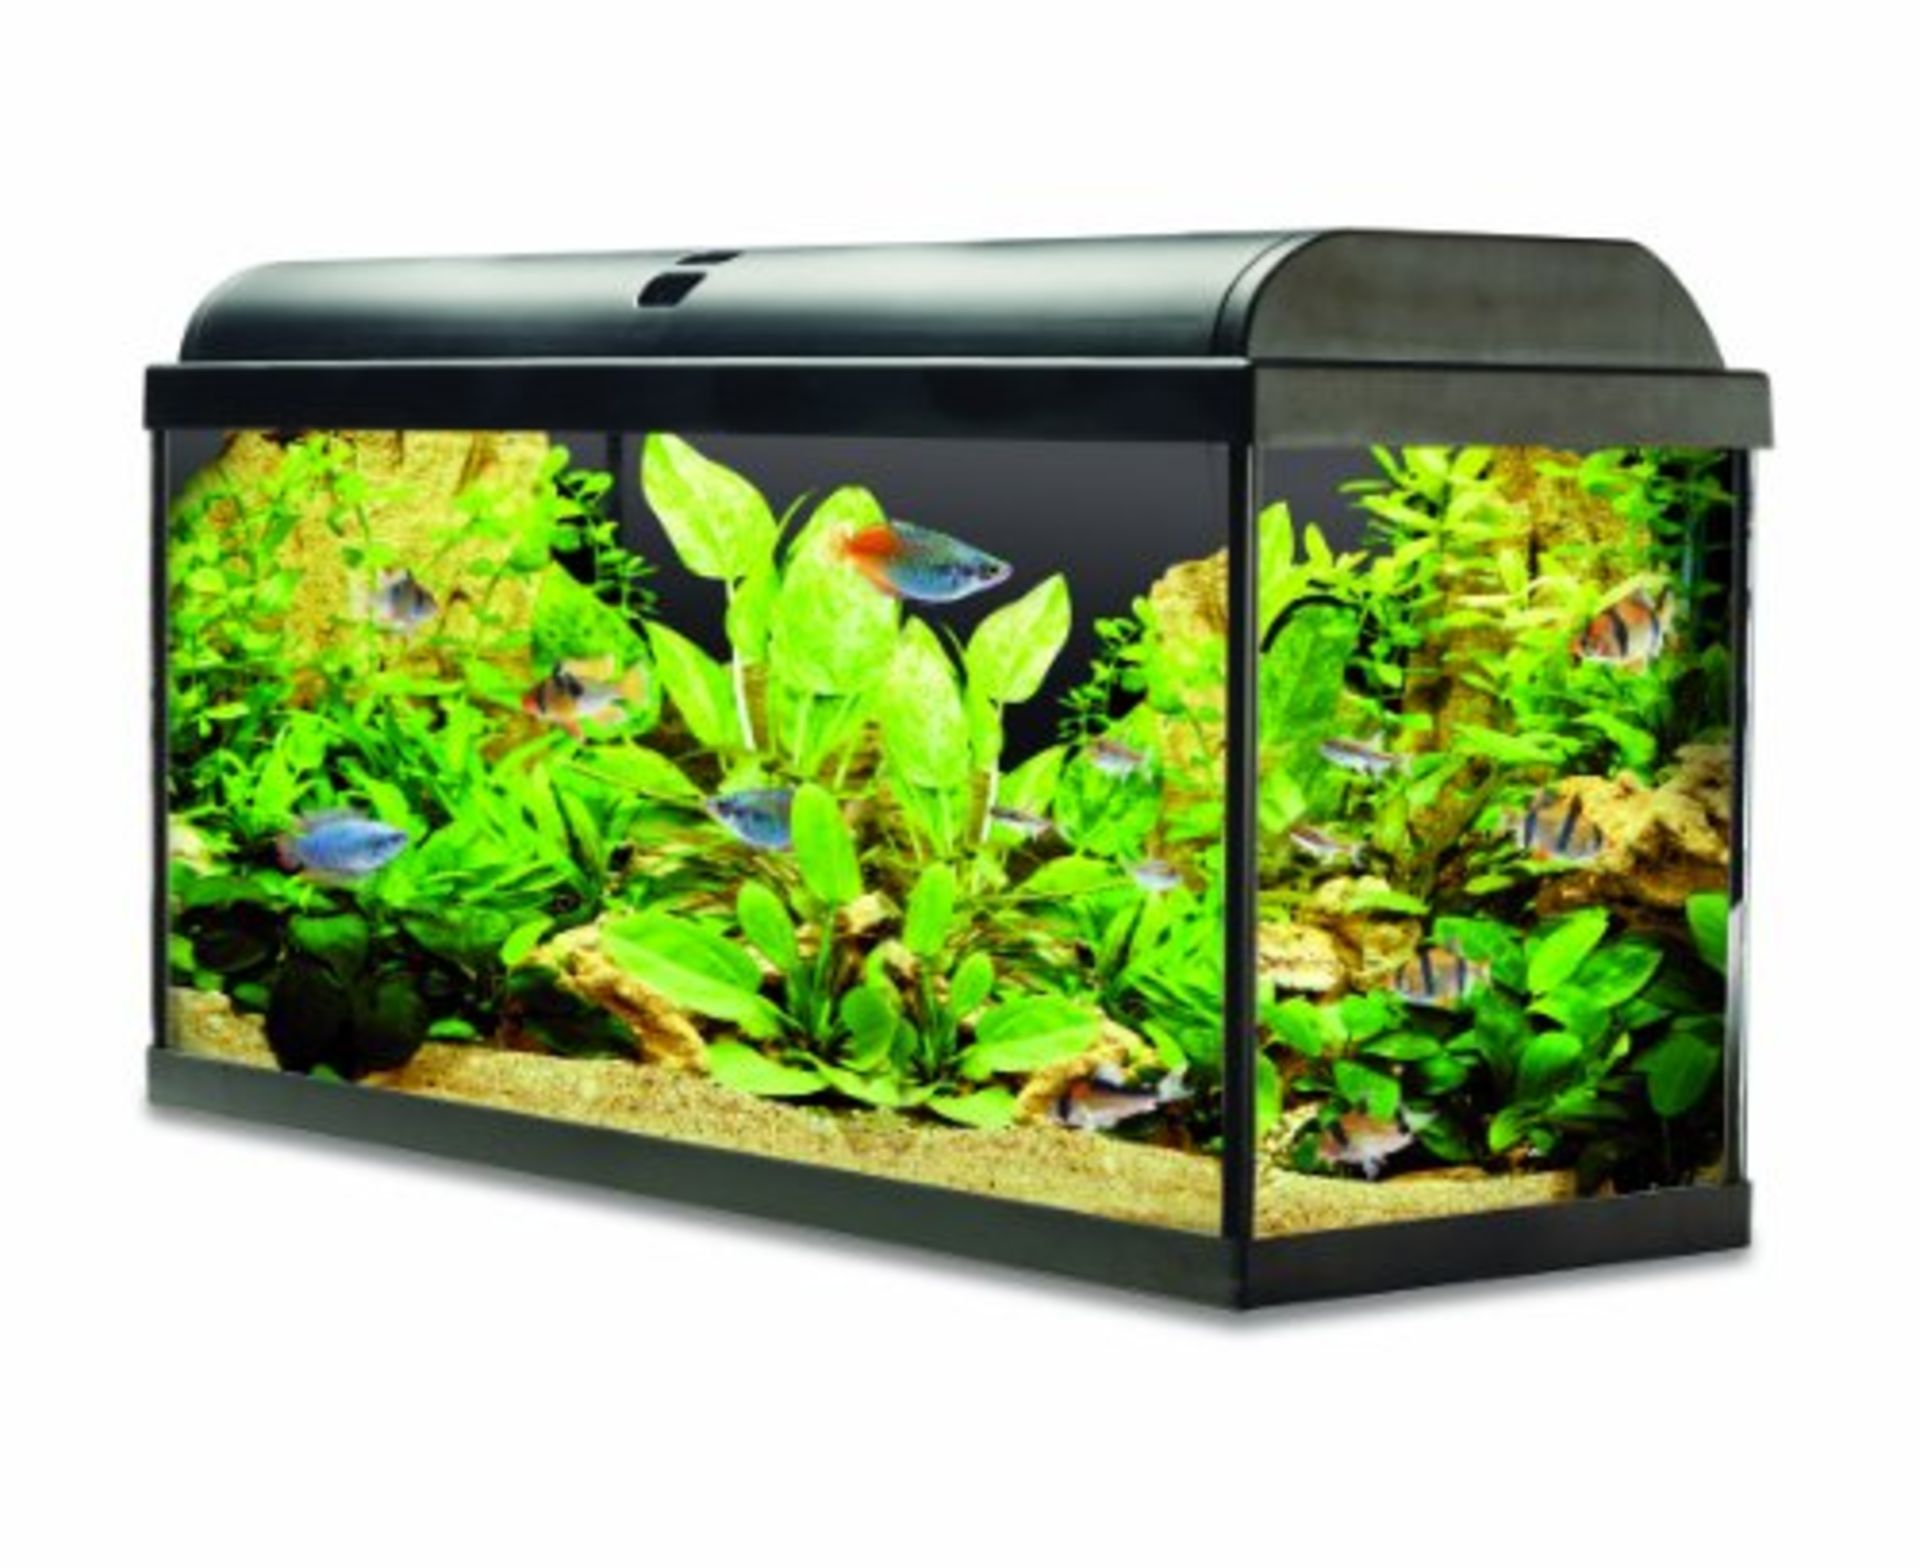 Interpet Aquaverse Glass Aquarium Premium Kit - 110L RRP £299.99